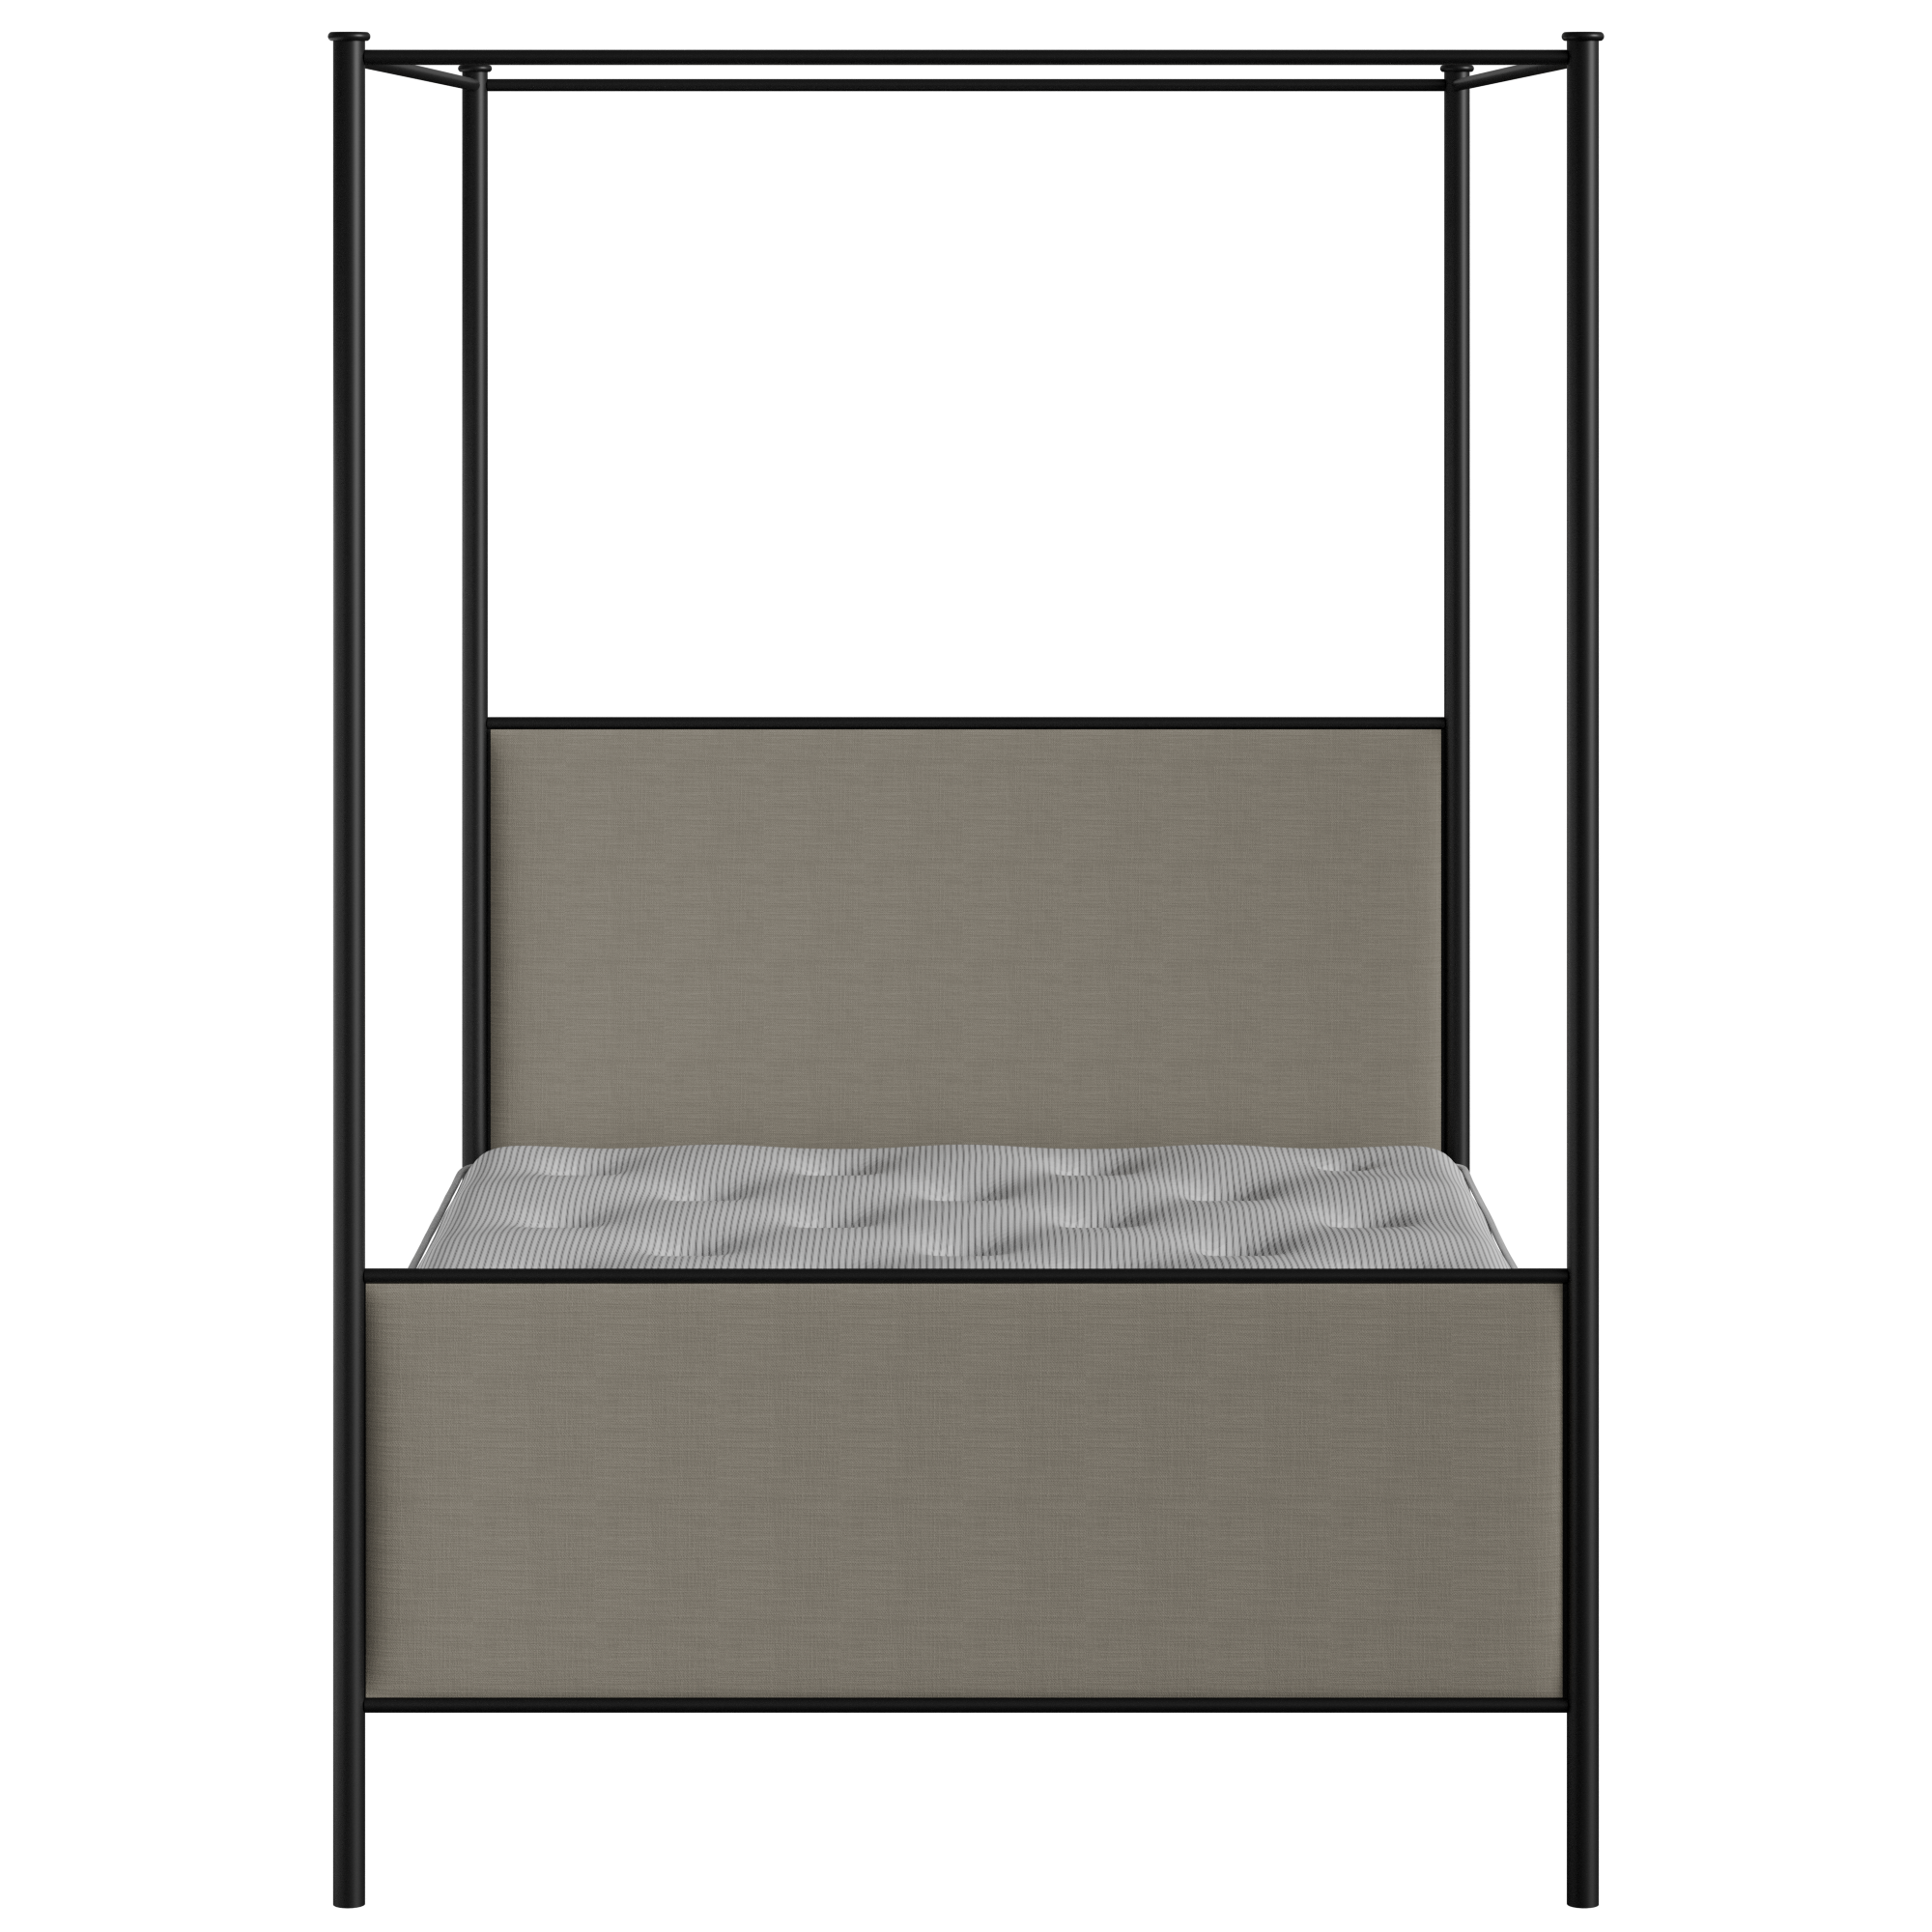 Reims cama de metal en negro con tela gris